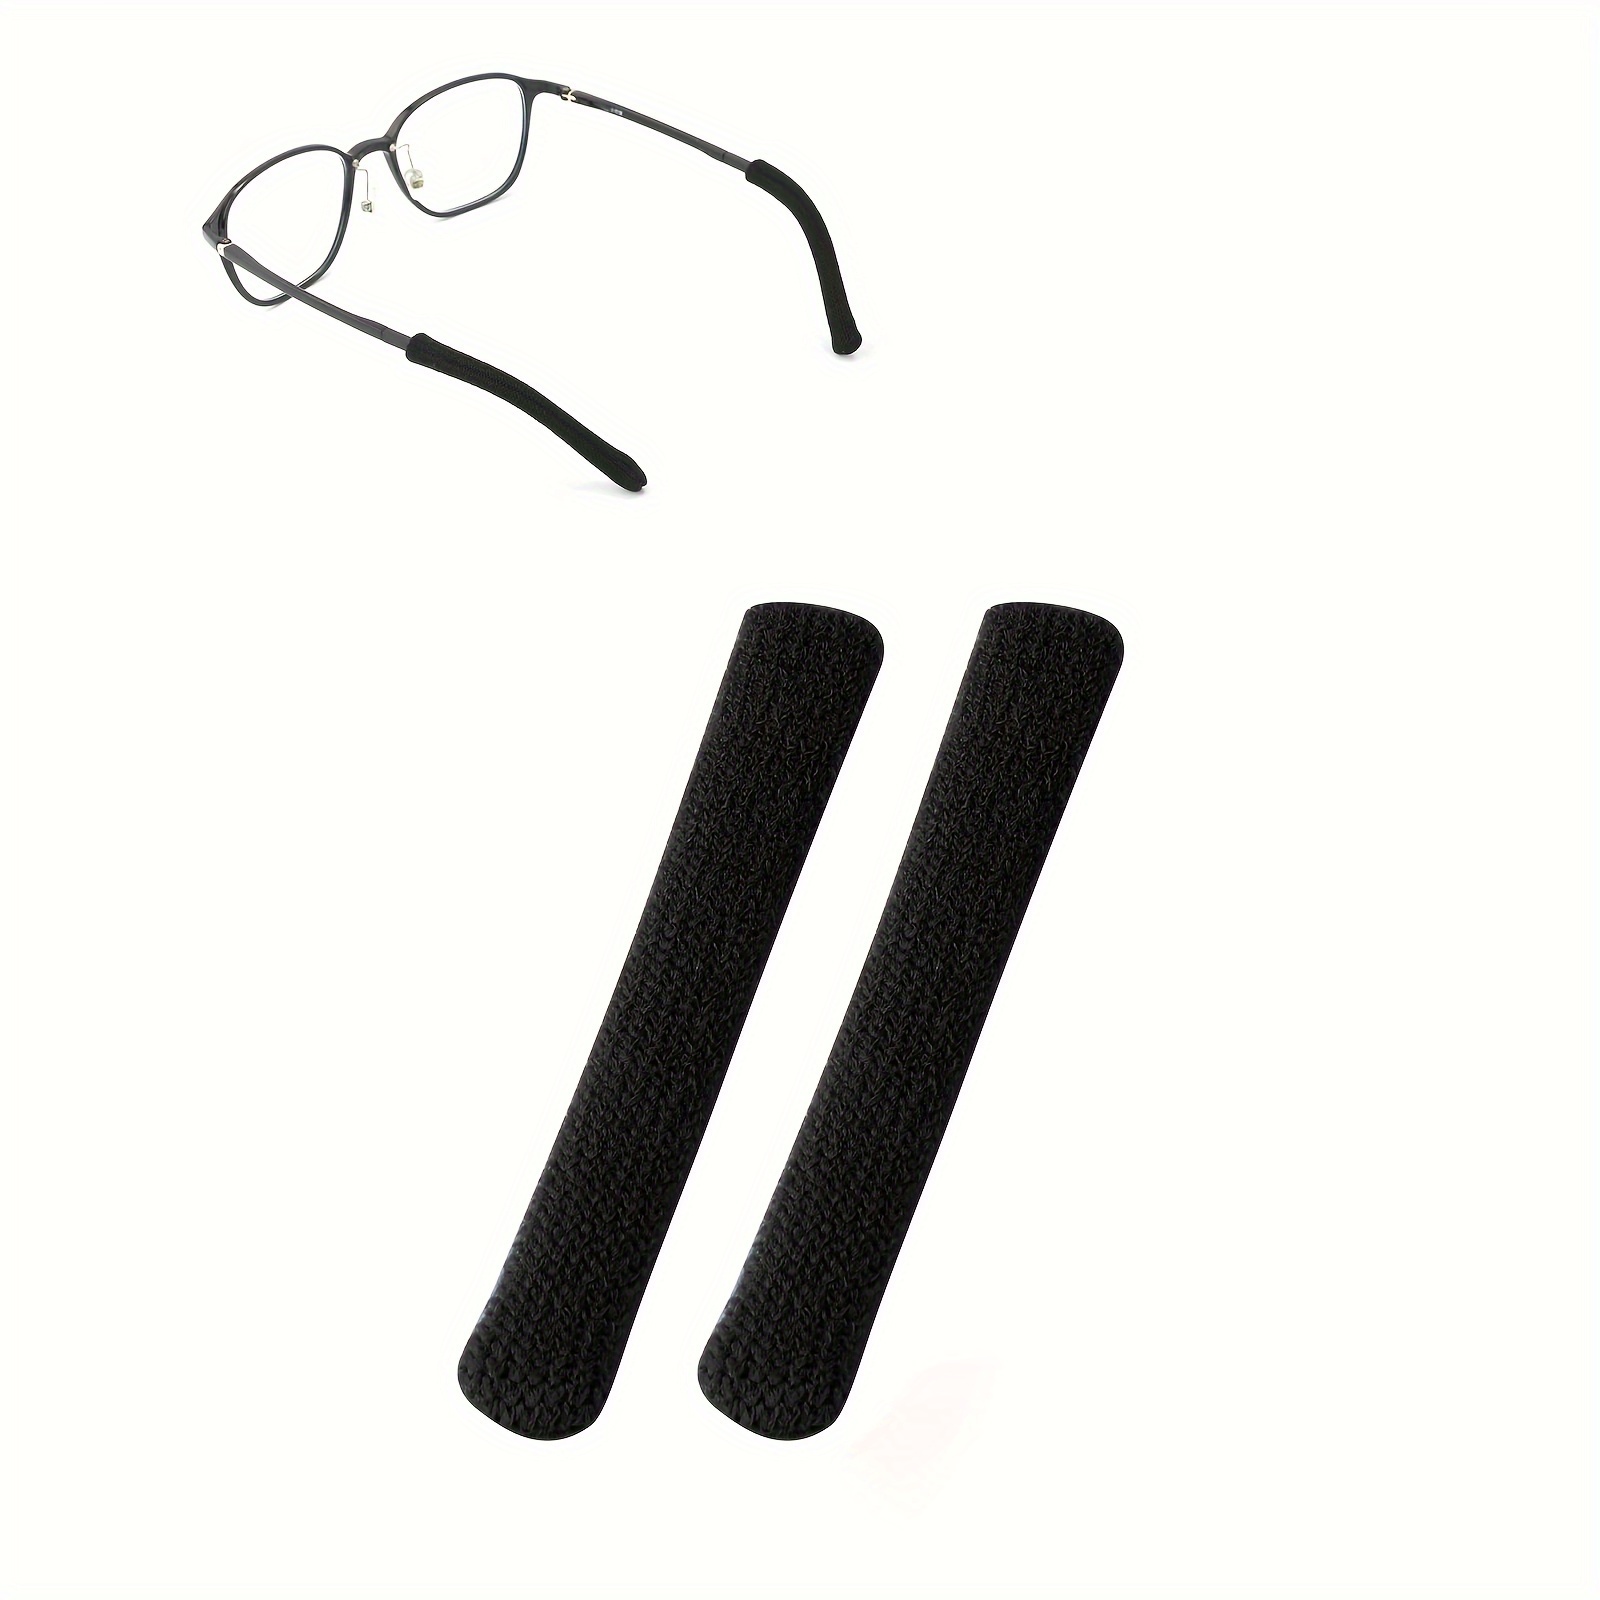 12 Paar Silikon Brillen Halterungen Brille Ohrbügel Anti-Rutsch- Brillenhalter Brille Ohrhaken Griff für Kinder Erwachsene Brillen